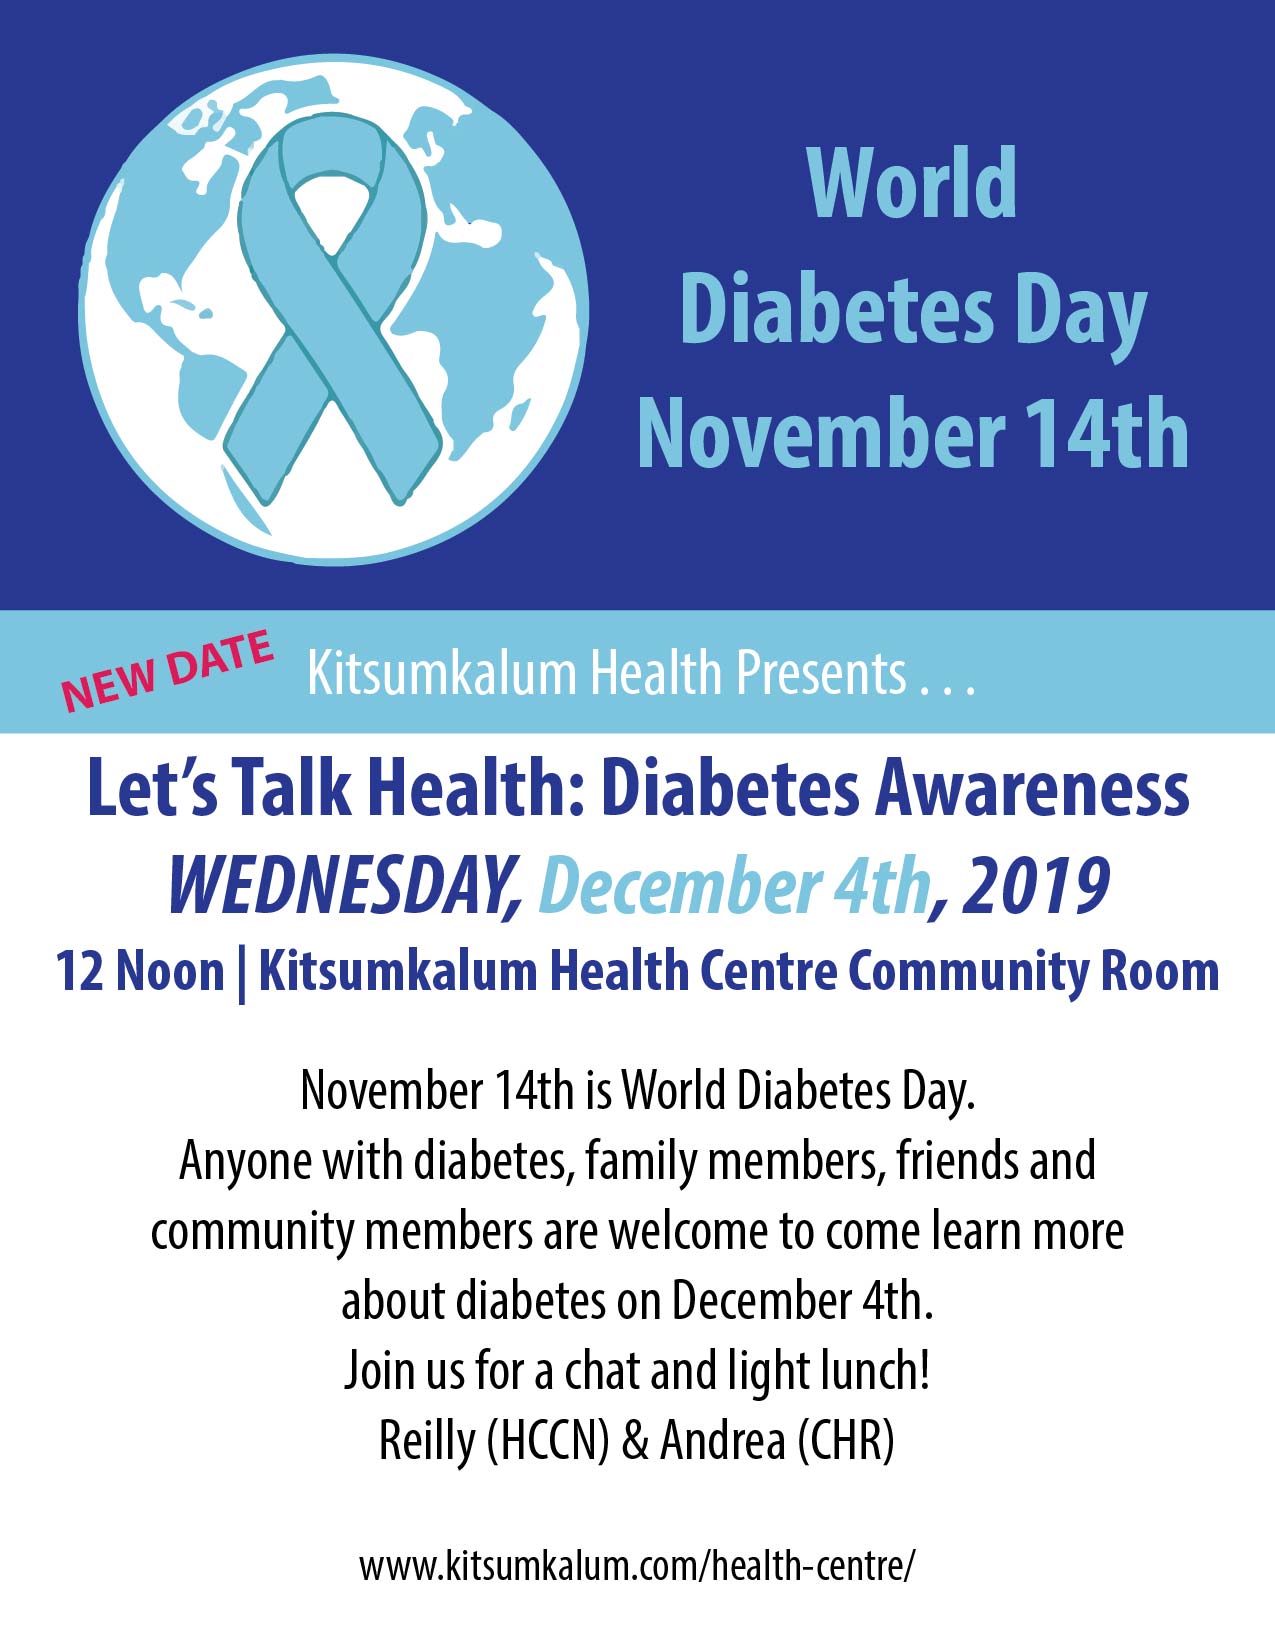 Let’s Talk Health: Diabetes Awareness DEC 4